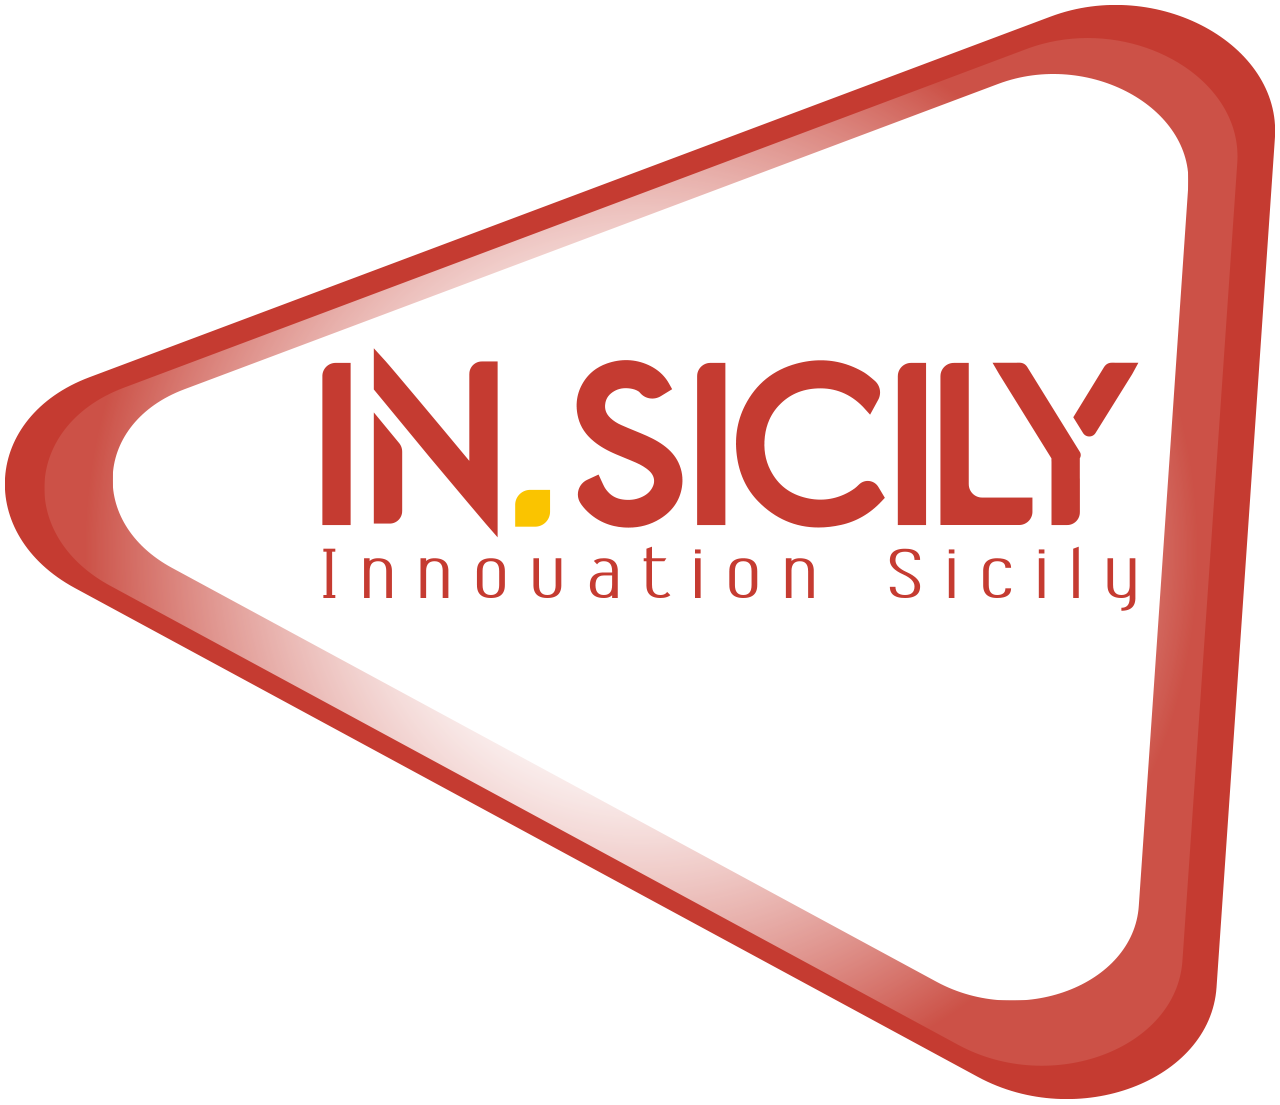 IN.SICILY - Innovation Sicily - Modulo di registrazione